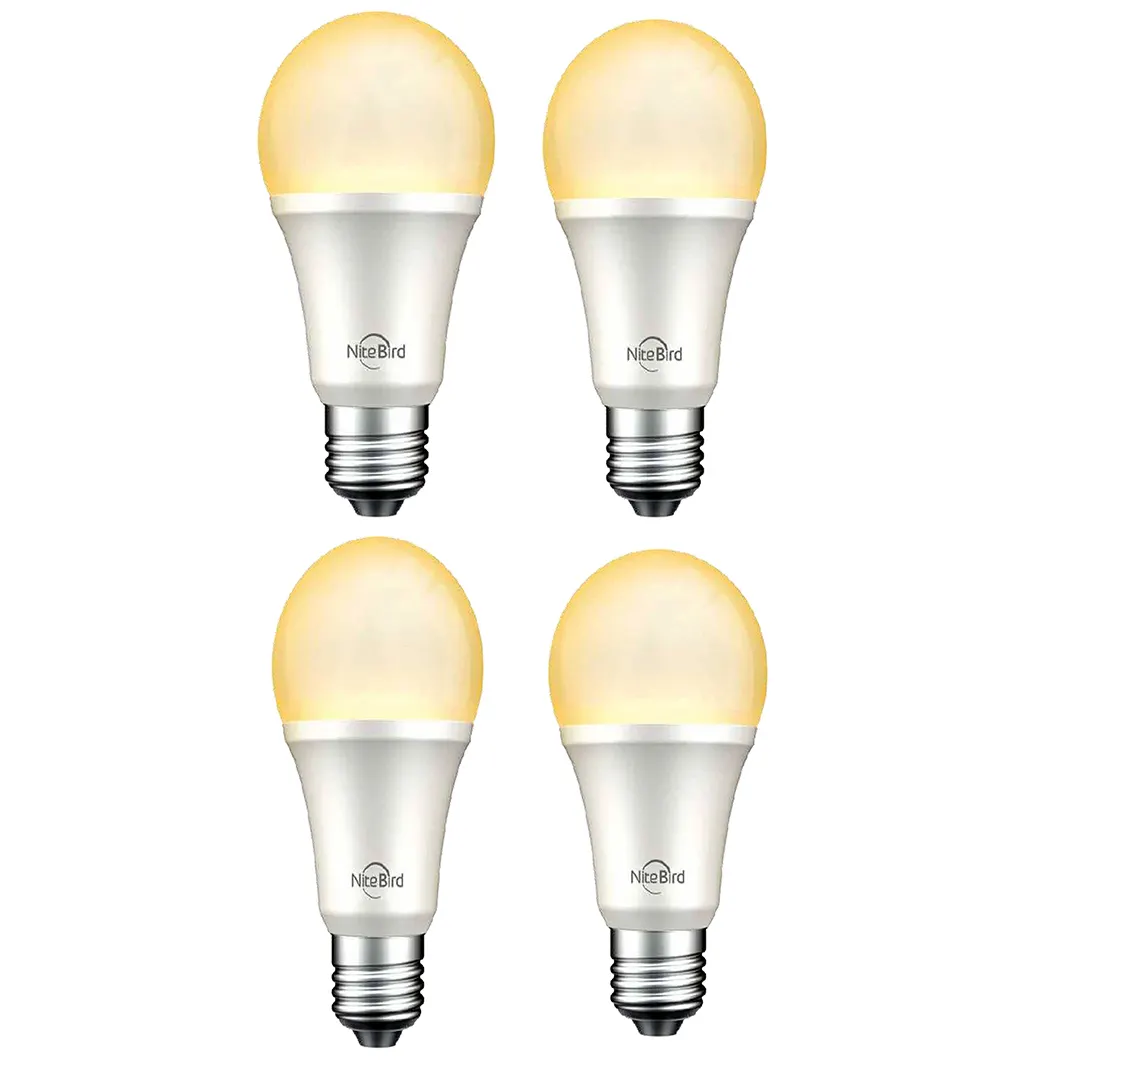 in stock for USGosund Nitebird smart life led wifi light tuya white color xiaomi smart bulb for 4 pack